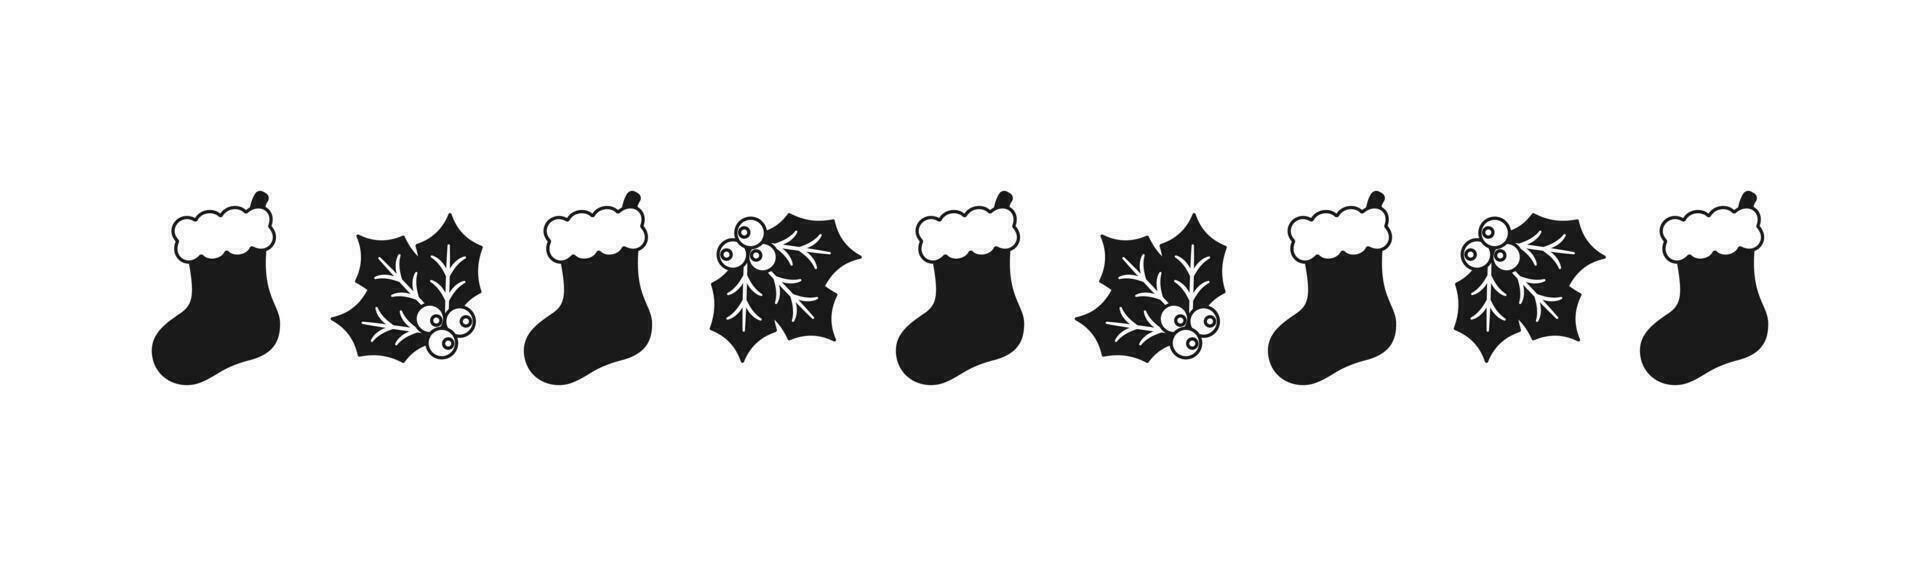 Natale a tema decorativo confine e testo divisore, Natale calza e vischio modello silhouette. vettore illustrazione.